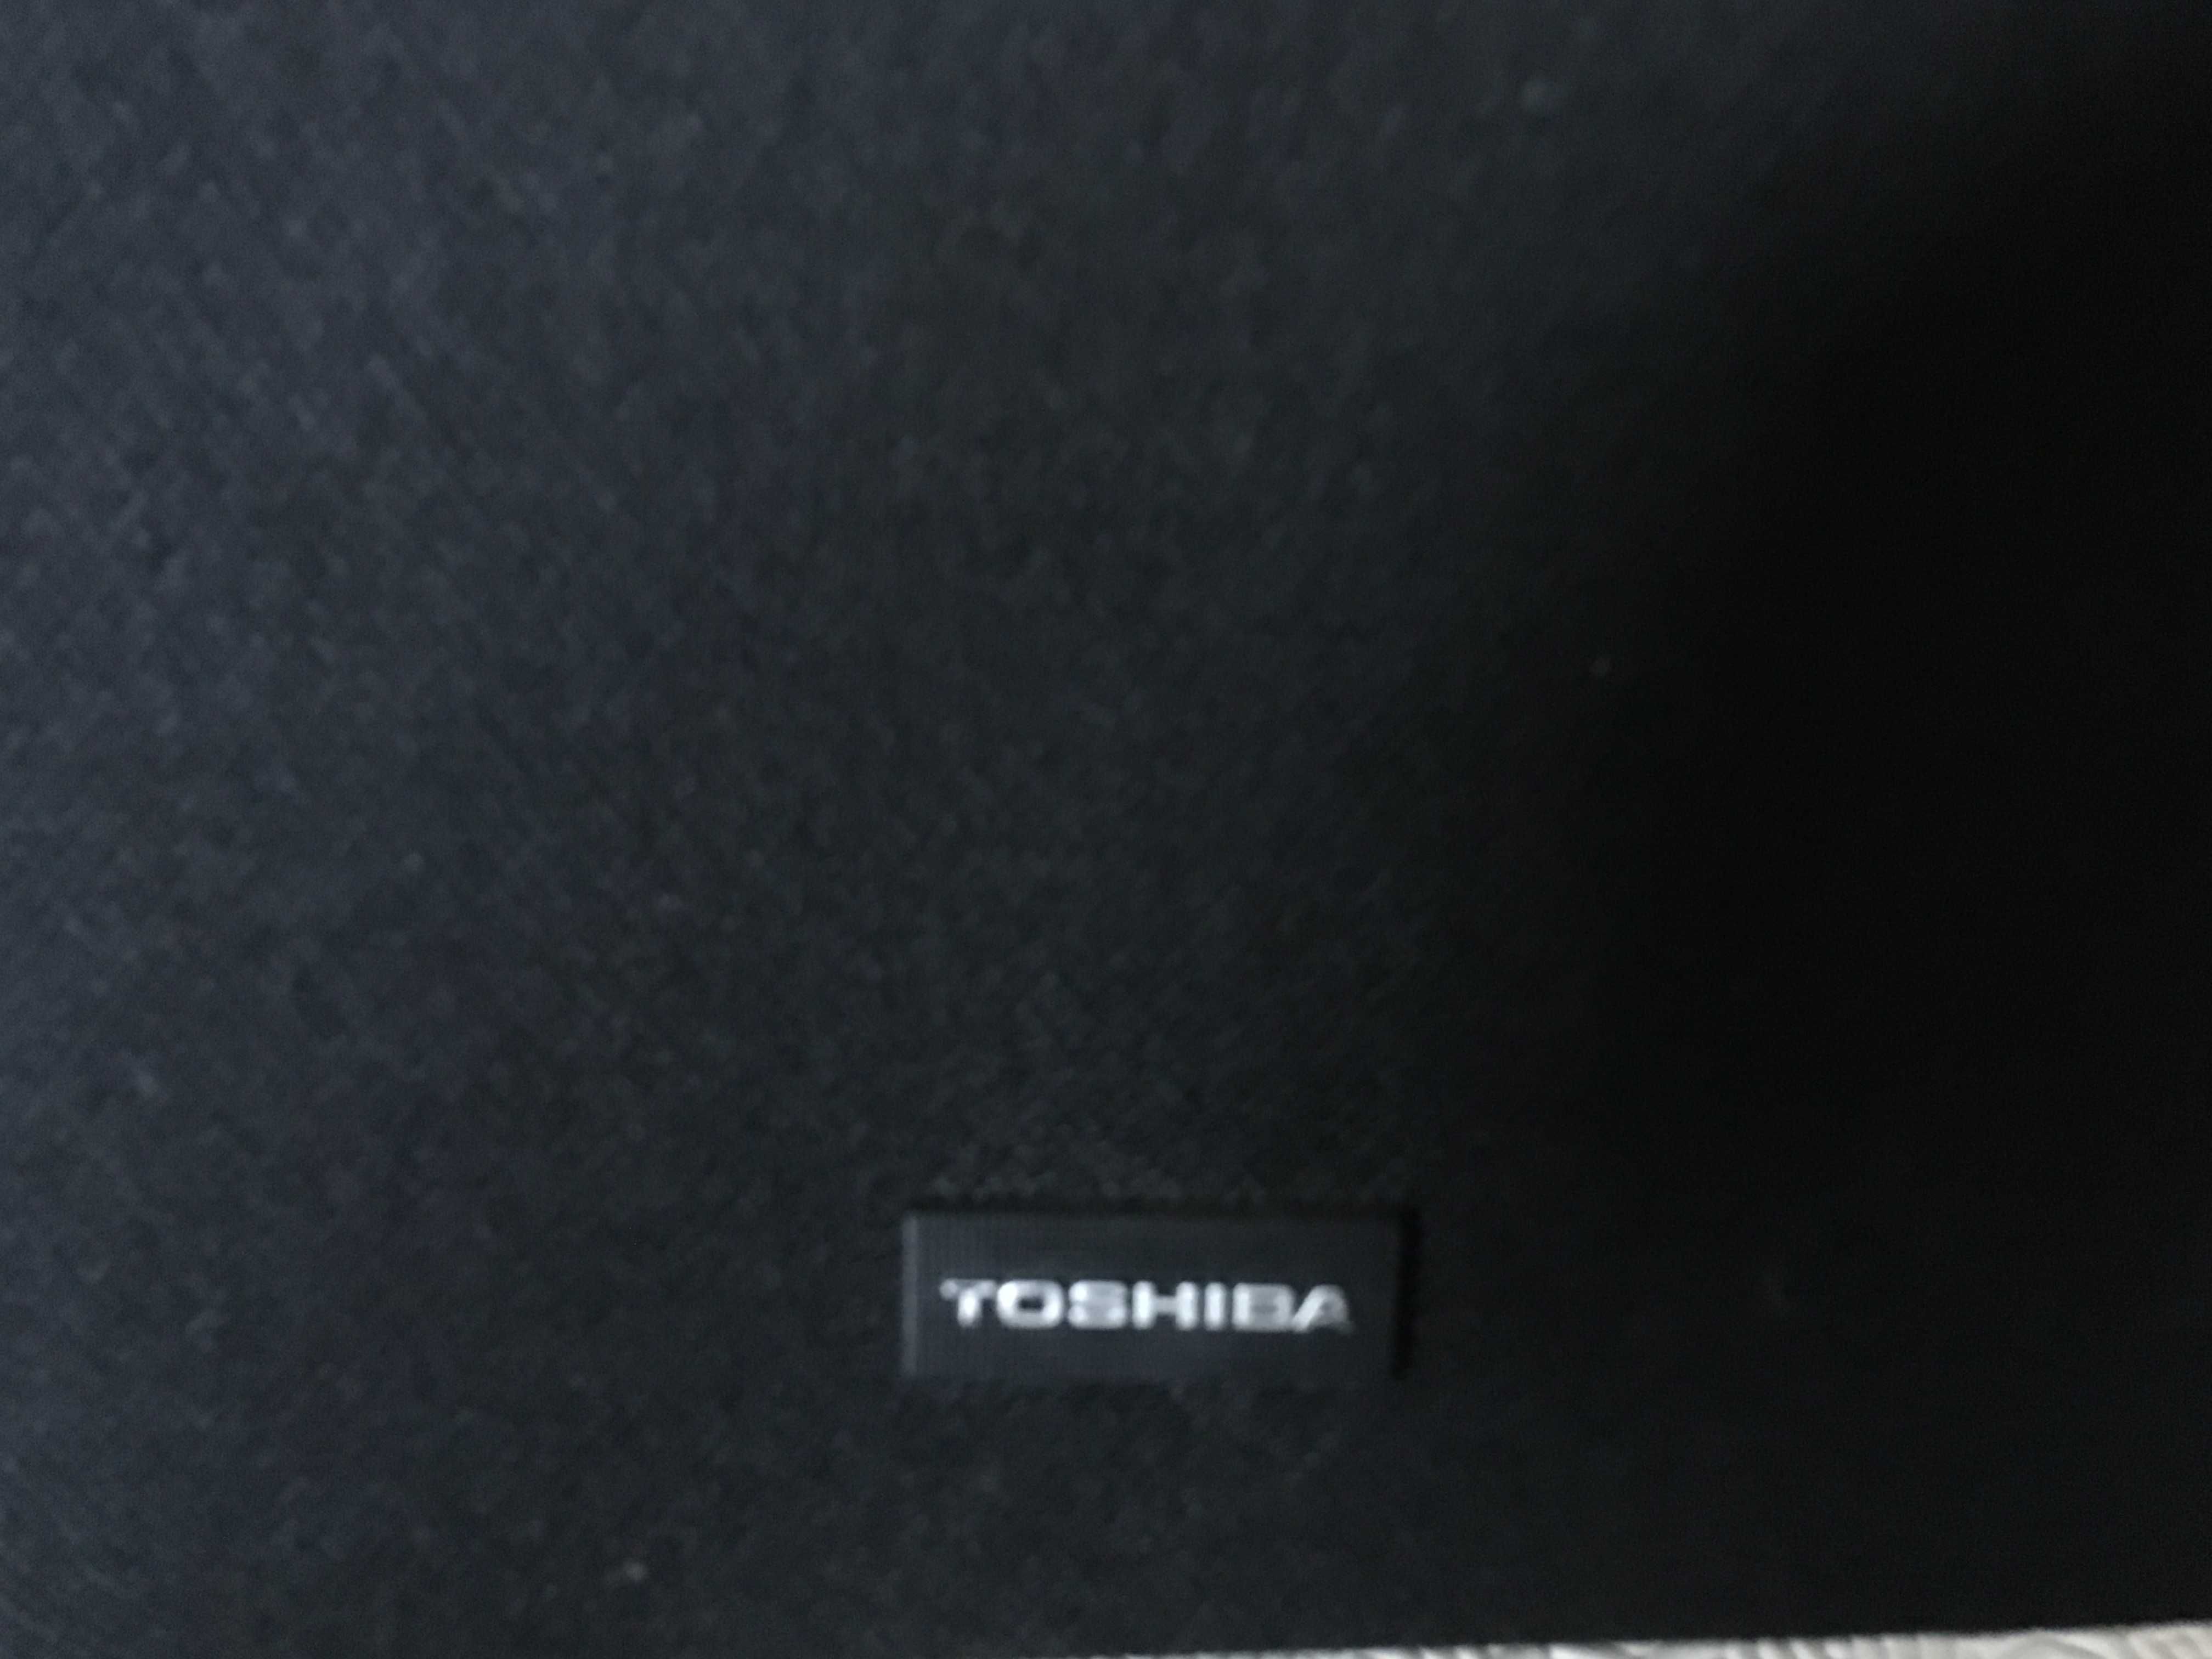 Aparelhagem Toshiba gira discos, radio, leitor de cassetes e 2 colunas